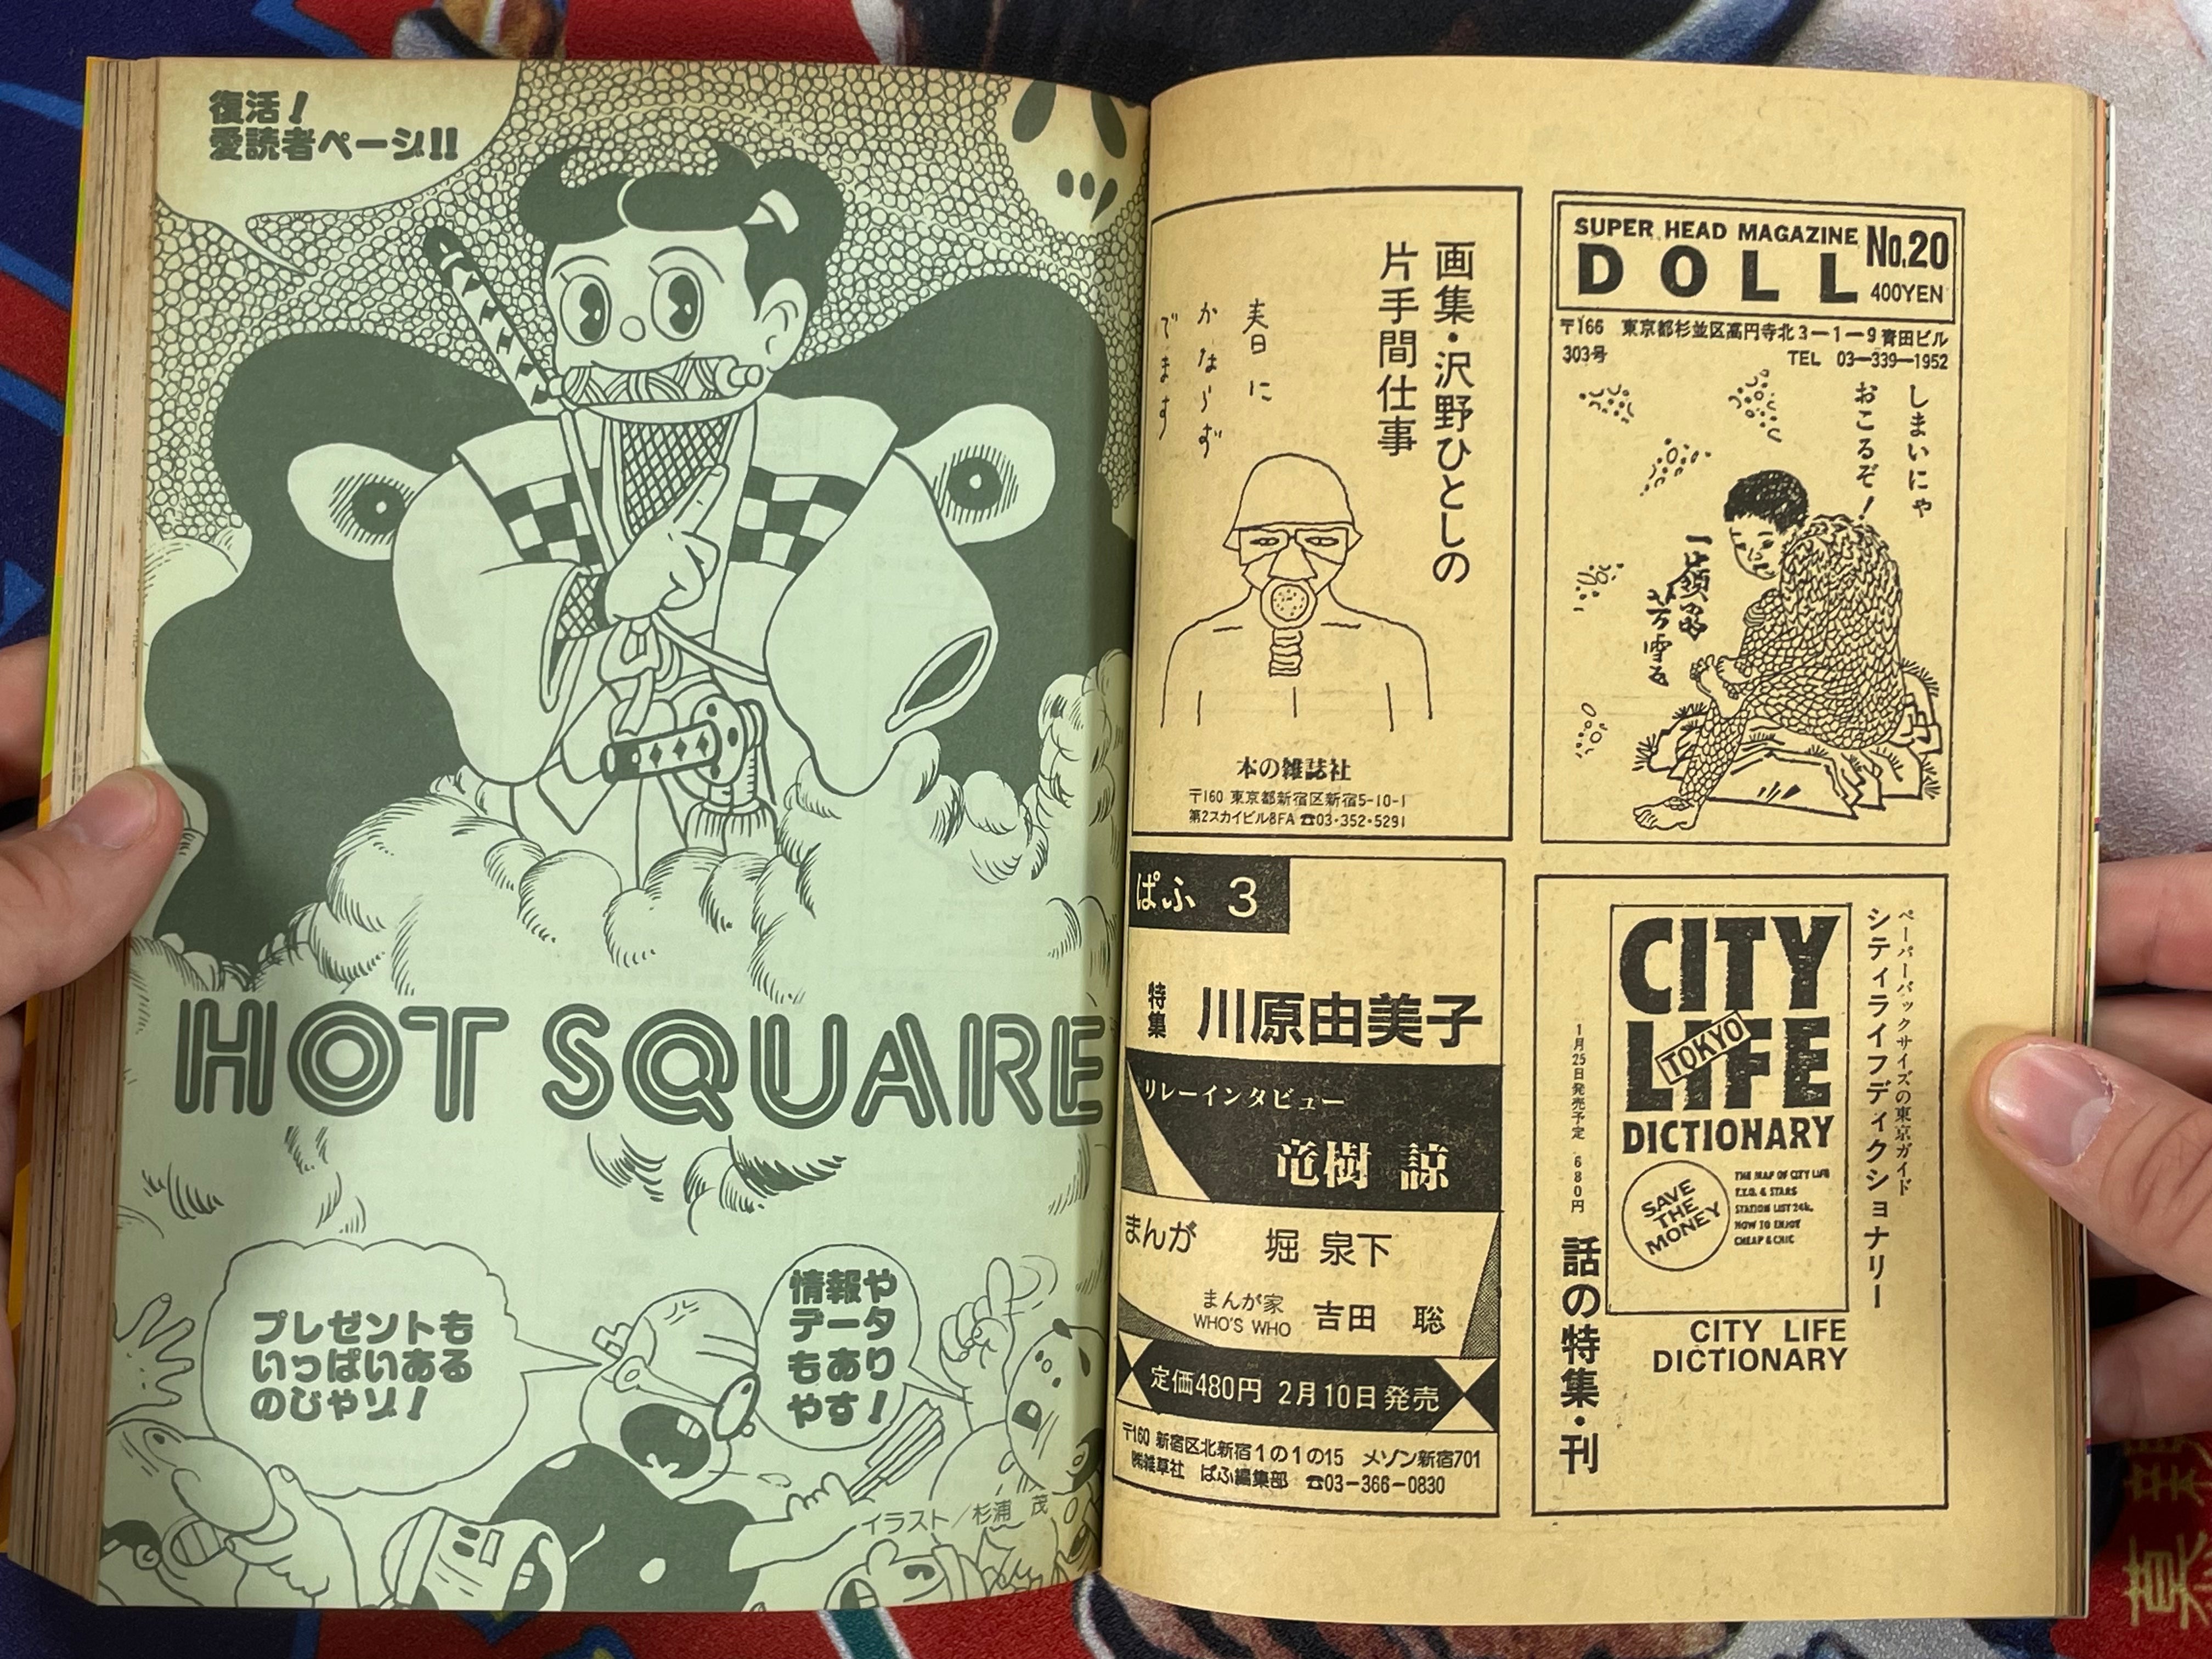 SF Manga Kyosaku Big Collection Magazine Part 24 - 3/1984